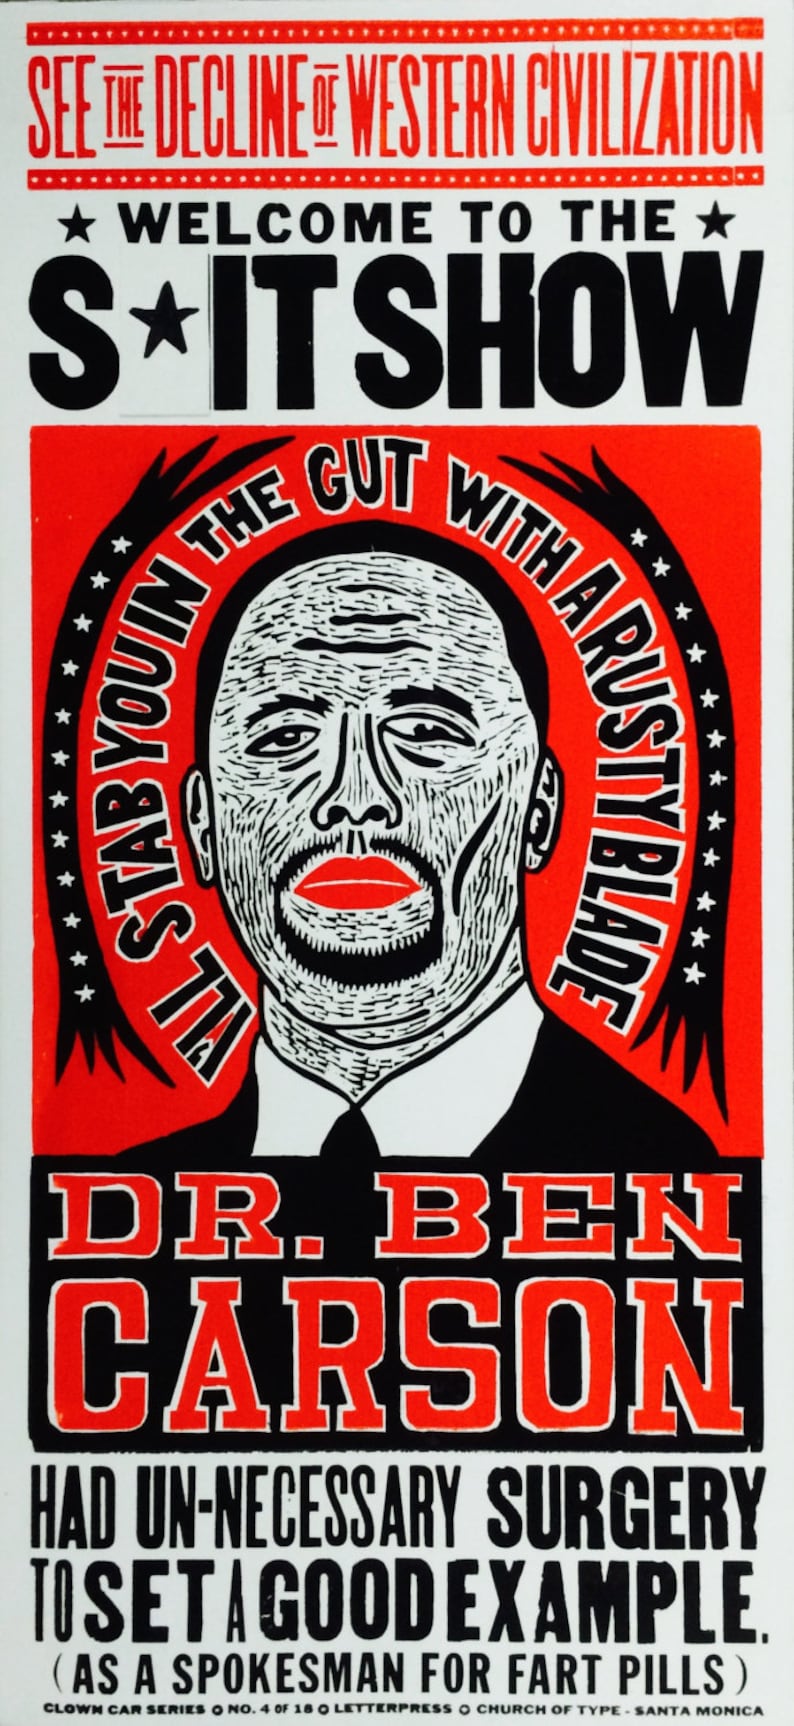 Ben Carson Presidential Election image 2